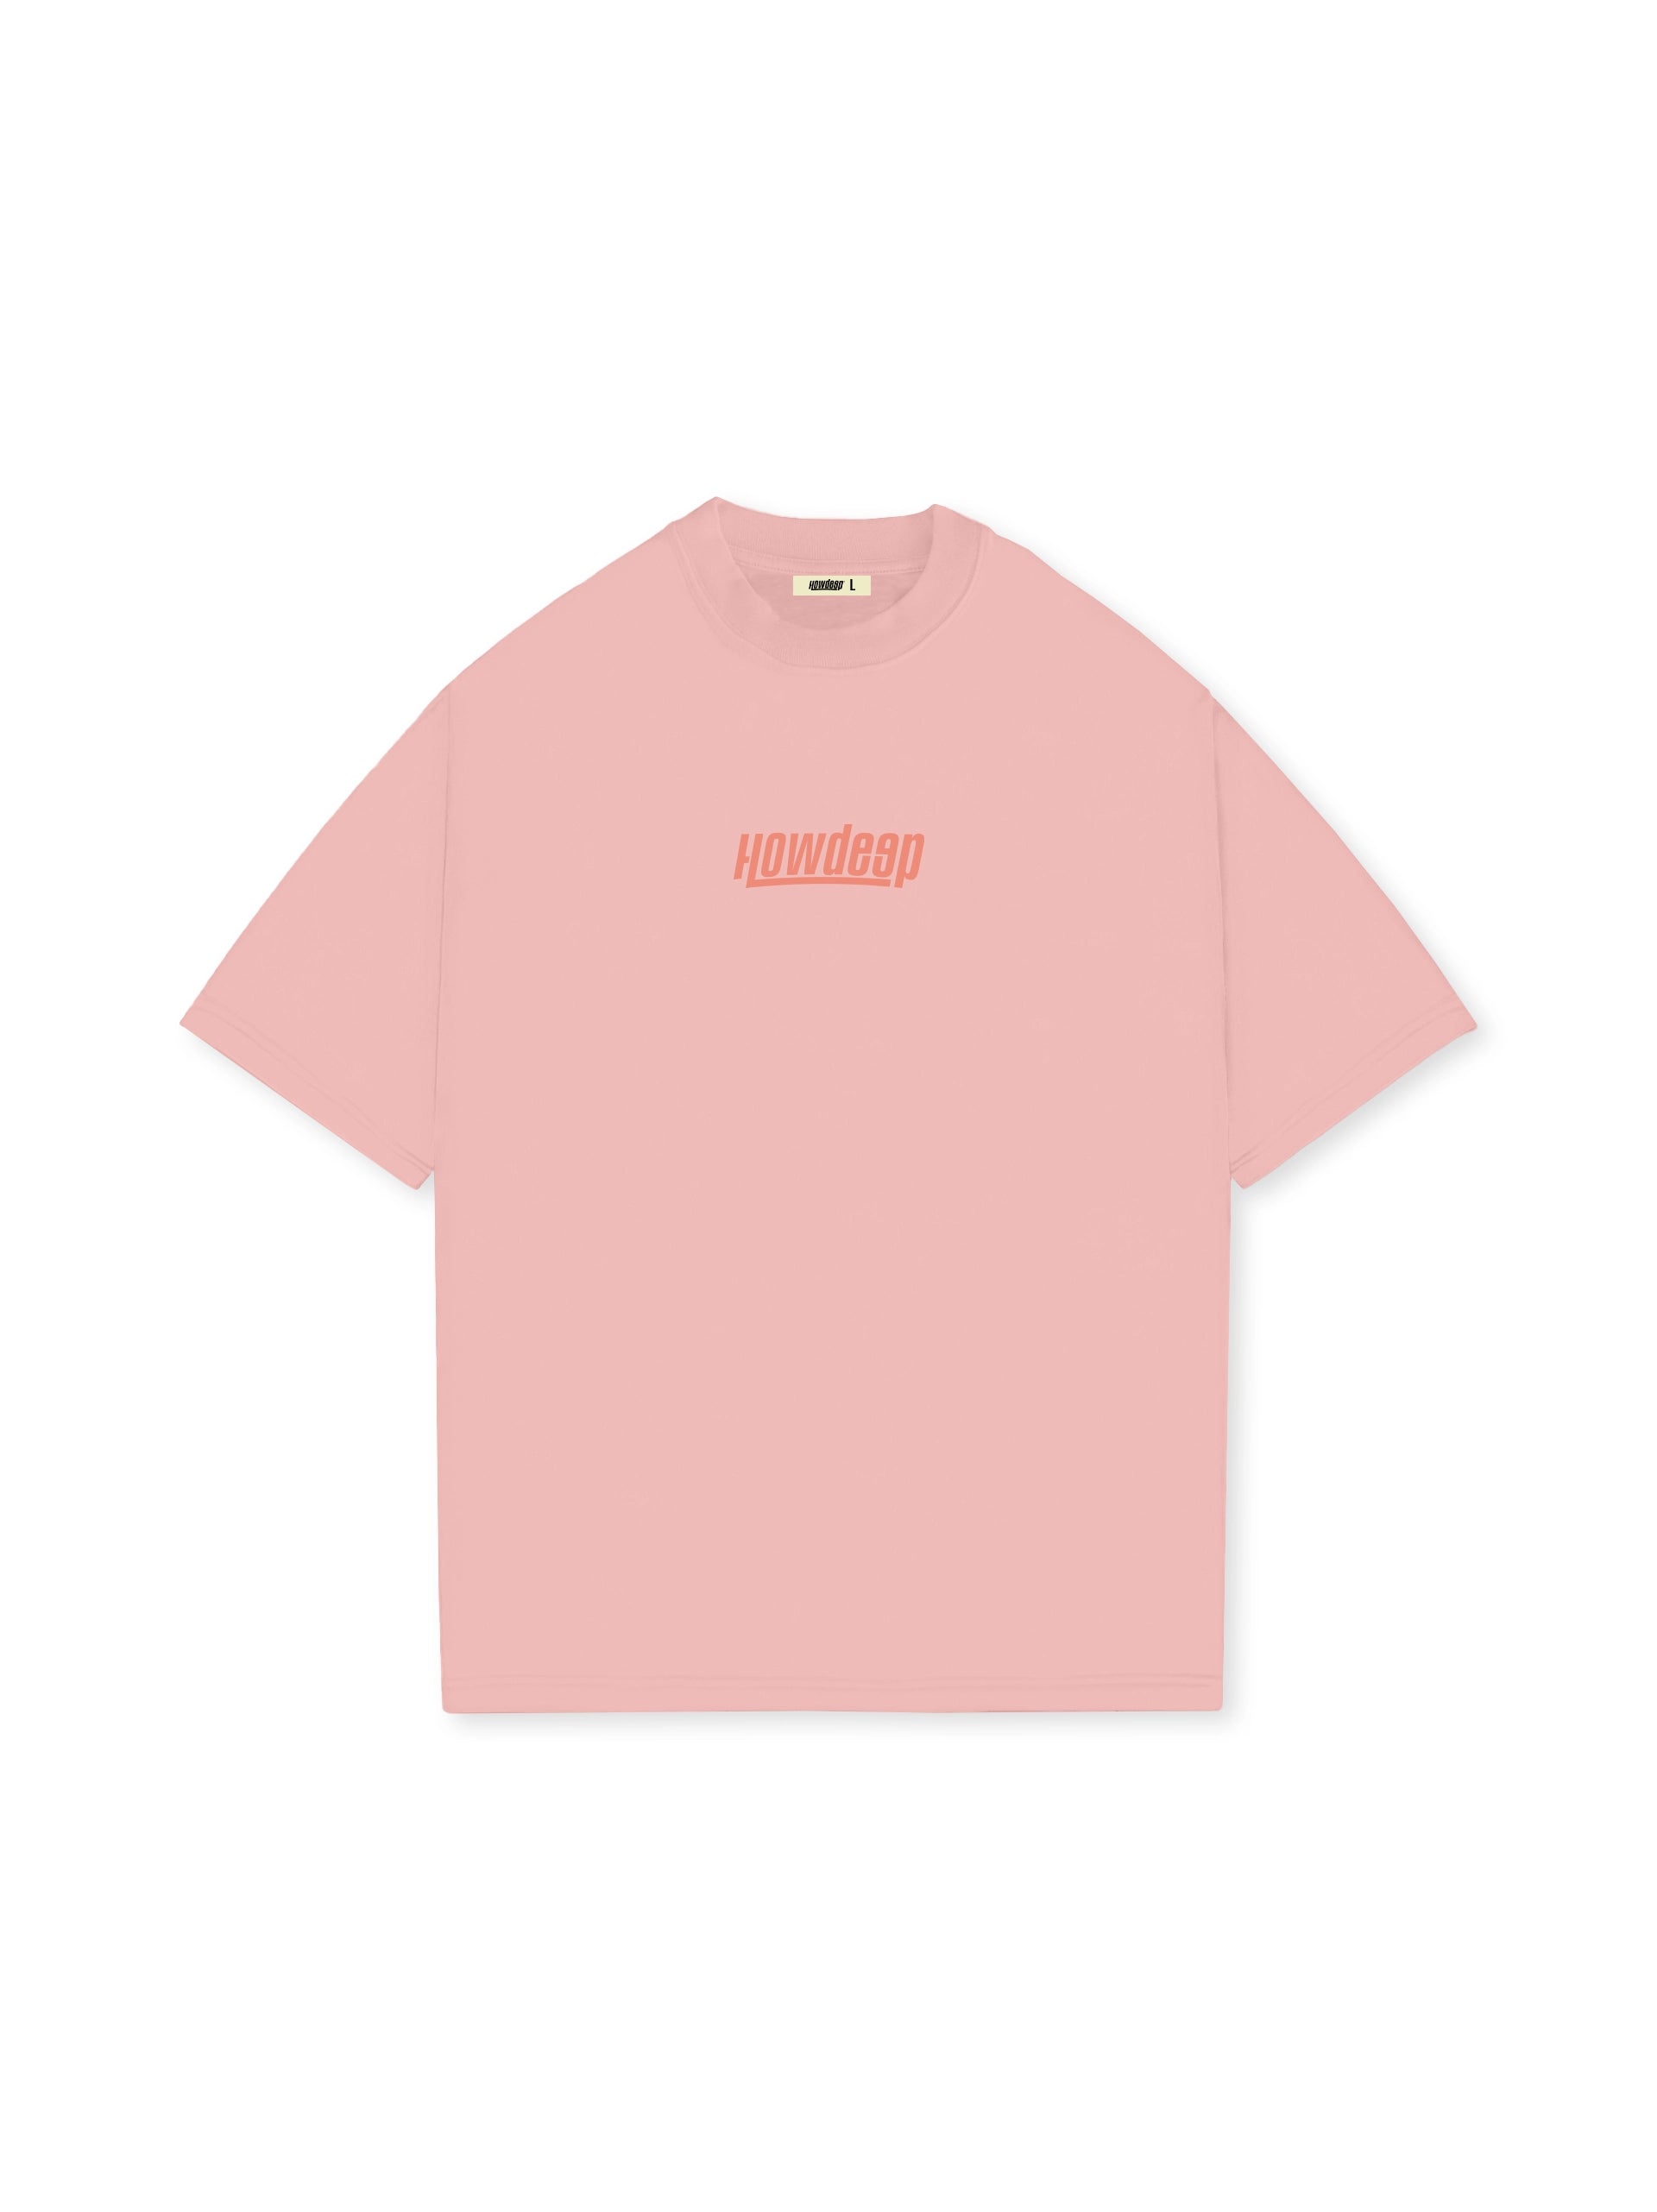 New Pink - Premium Shirt